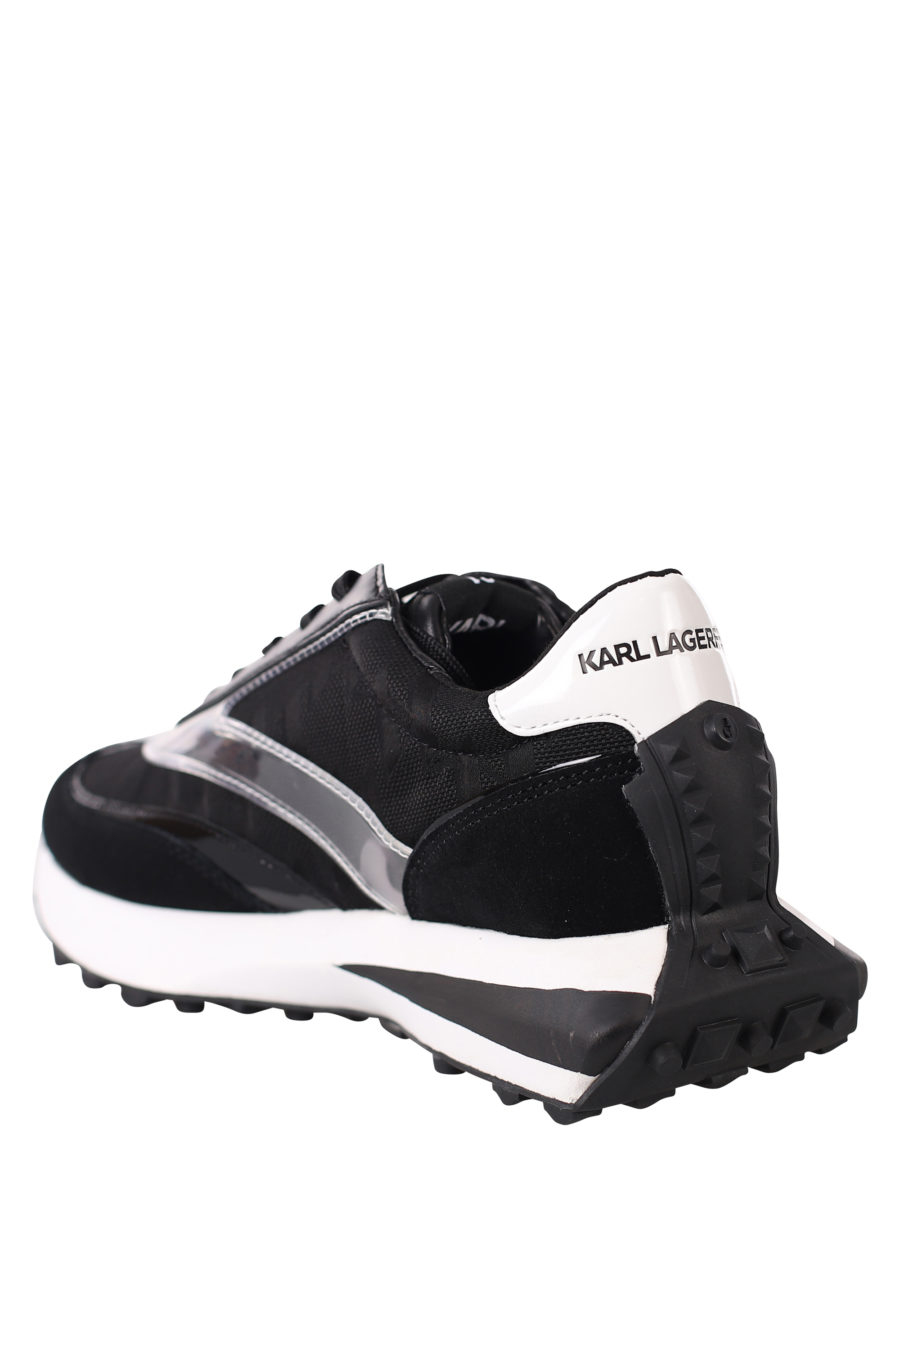 Zapatillas negras "zone" con logo blanco en silueta y suela blanca - IMG 0440